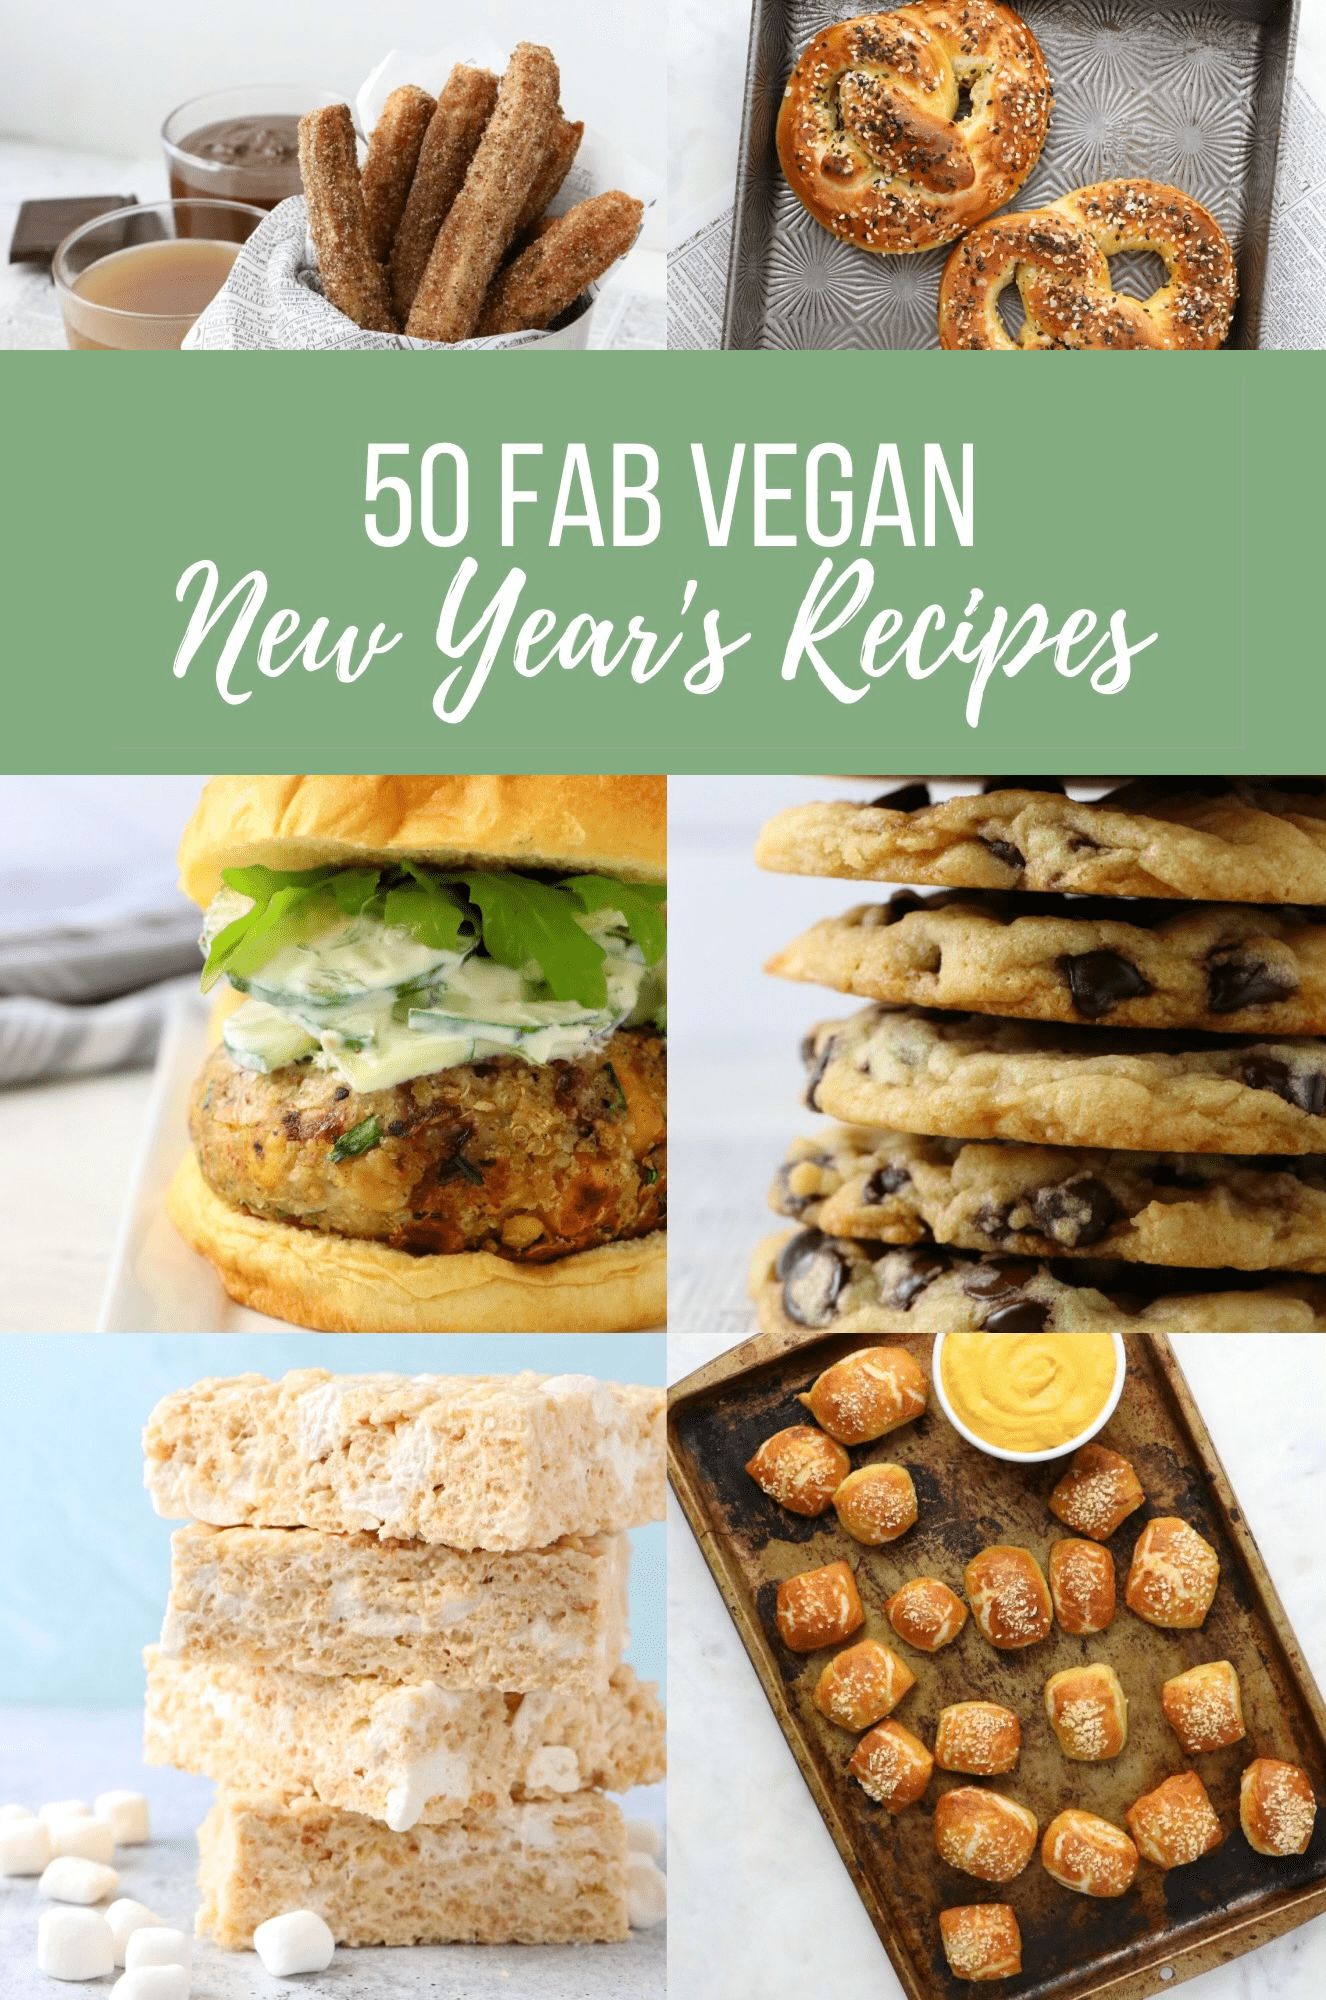 50 Fab Vegan New Year’s Recipes